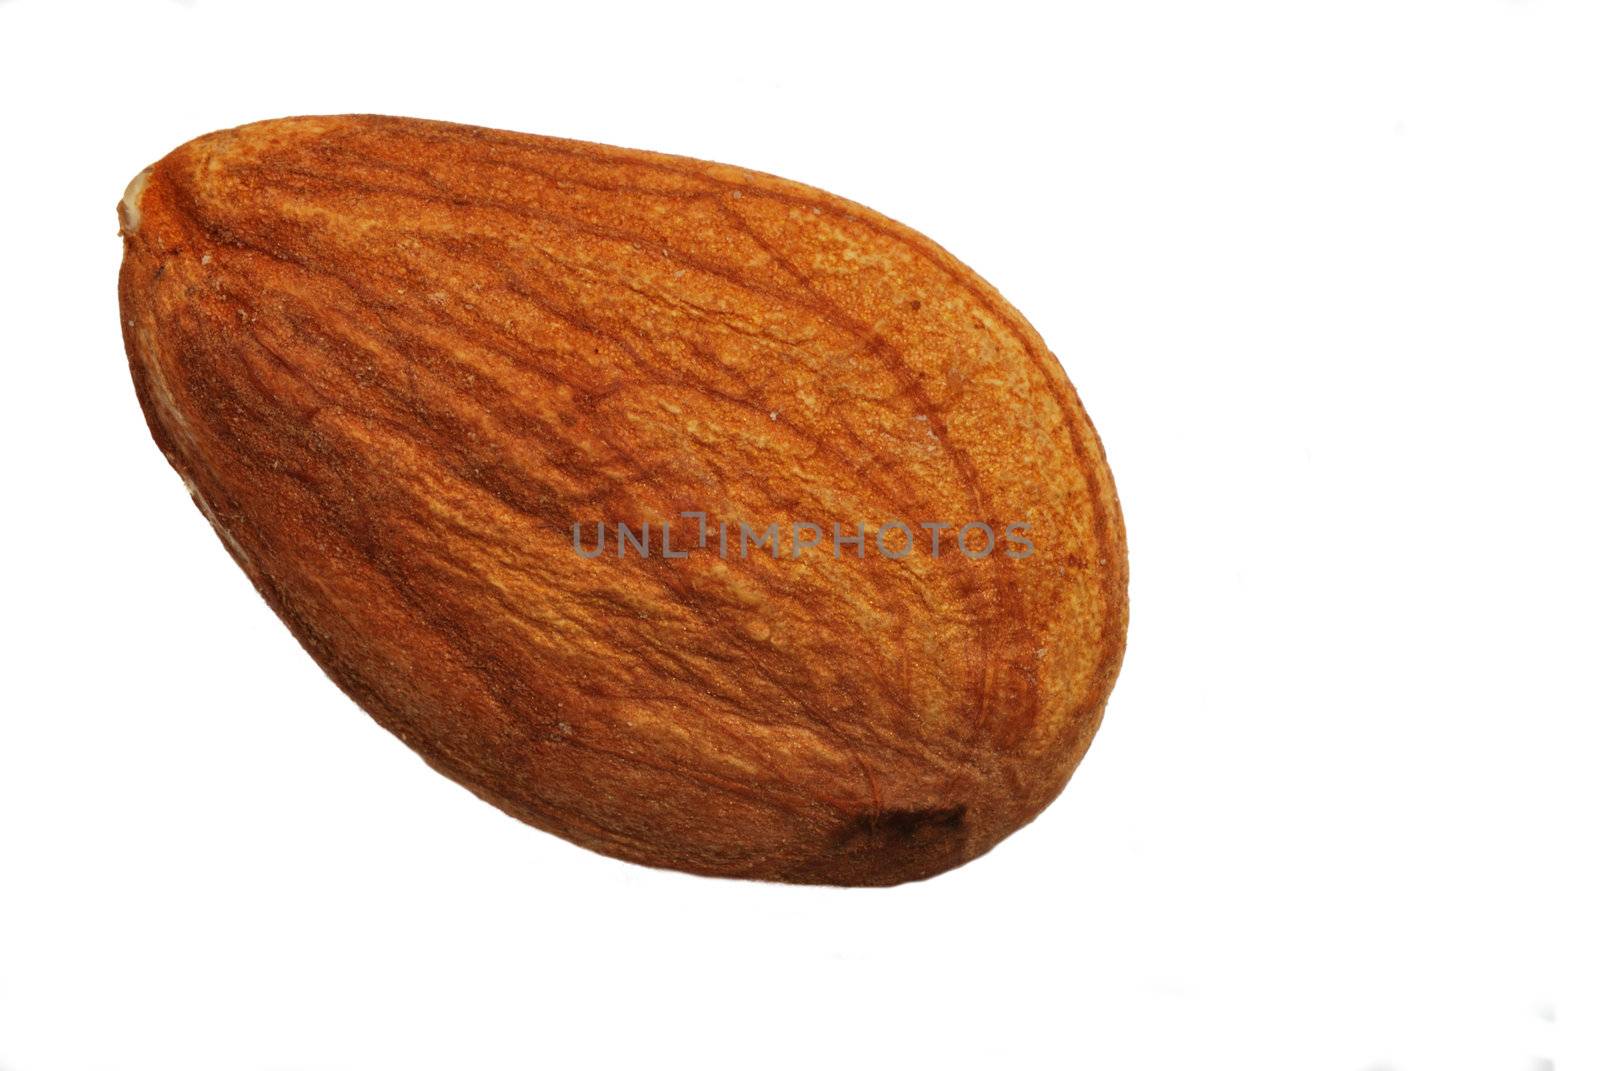 Single almond by pauws99